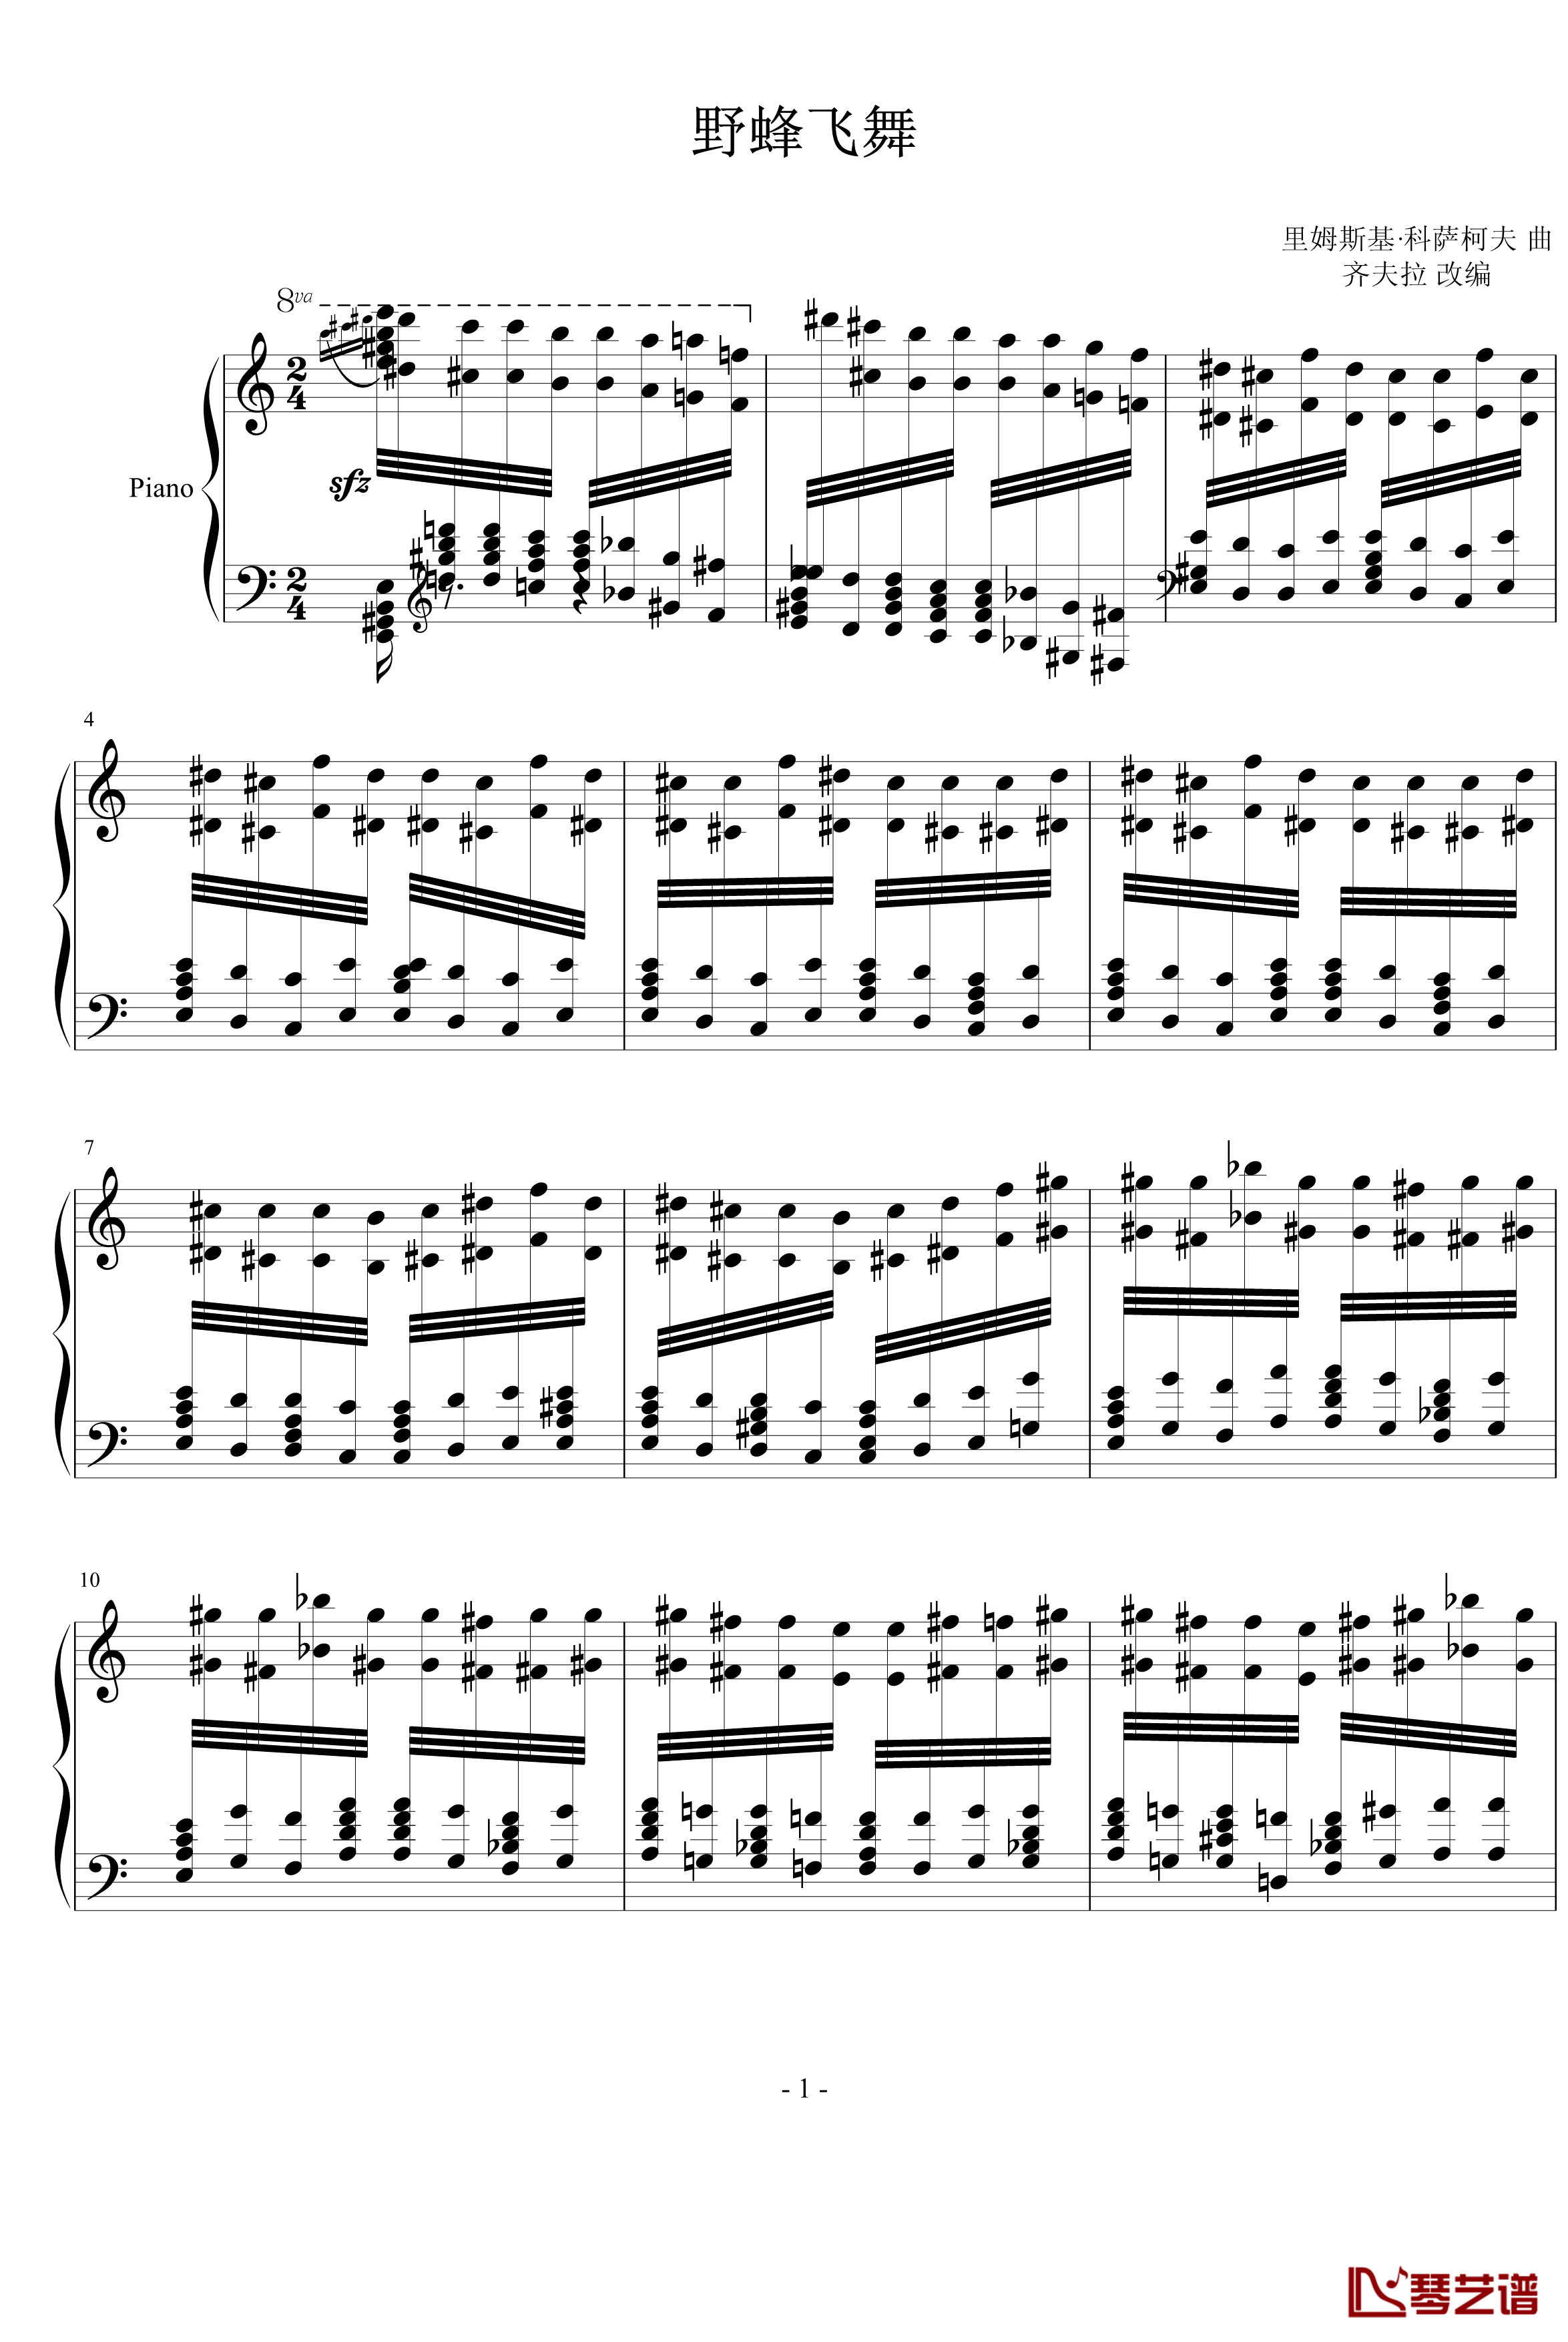 野蜂飞舞钢琴谱-齐夫拉版-世界名曲1